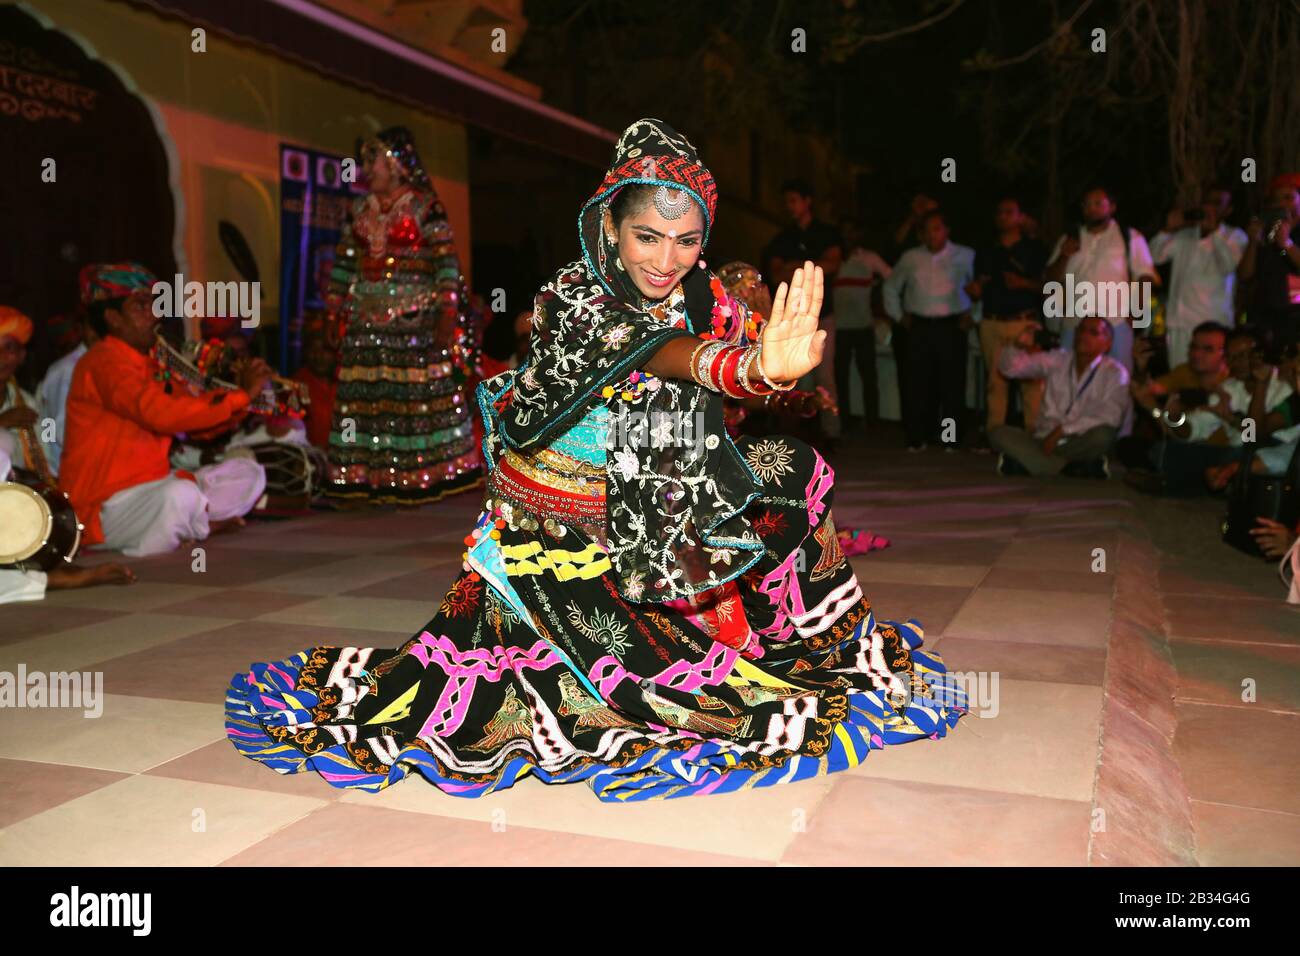 7 Jul 2018, Jaipur, Rajasthan, India.  Female dancer in colorful attire perfoming at Sheesh Mahal Stock Photo